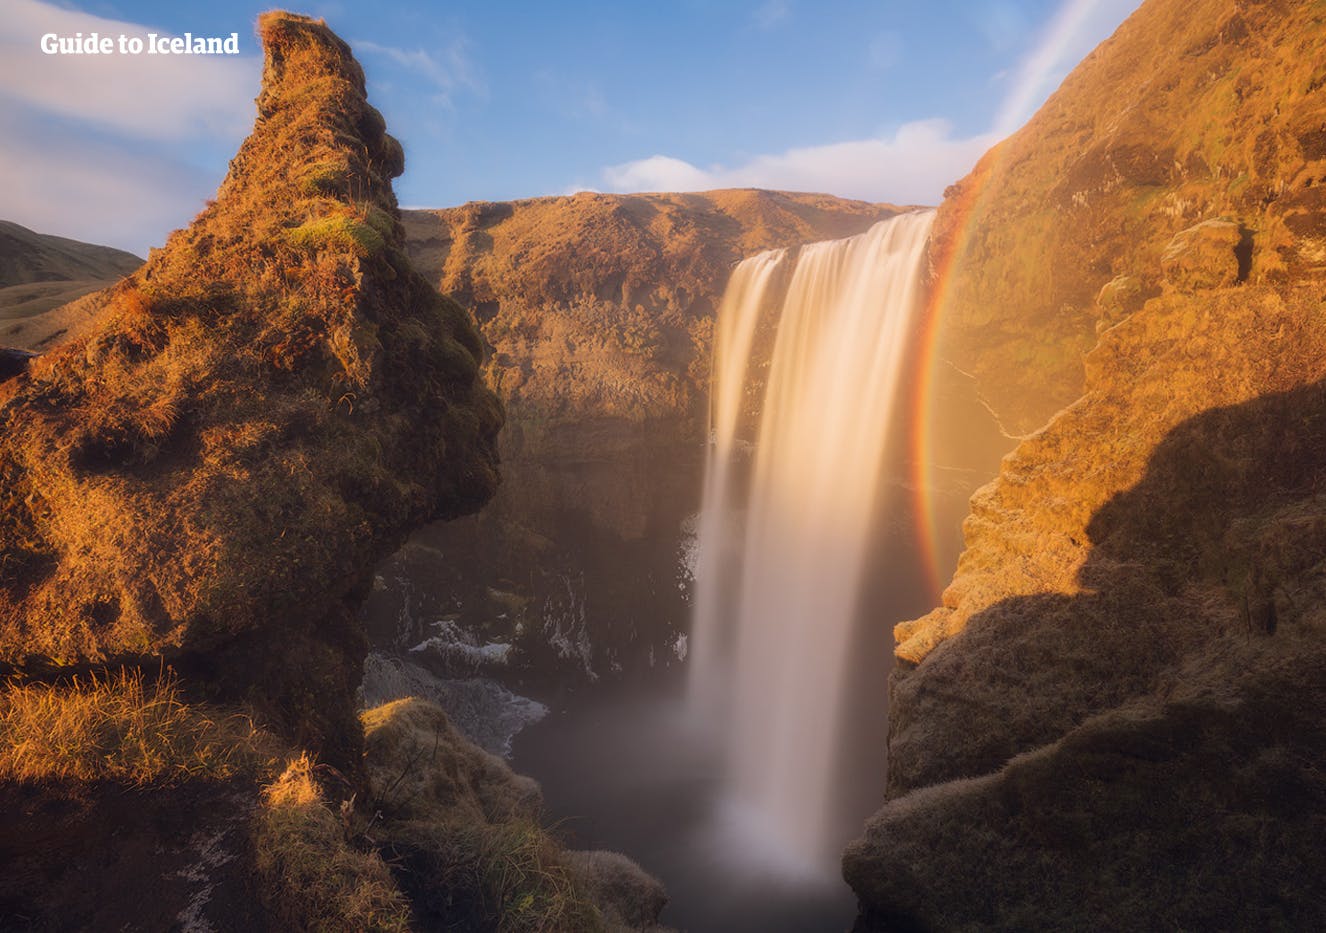 在冰岛南岸著名的斯科加瀑布(Skógafoss)前留下你的身影